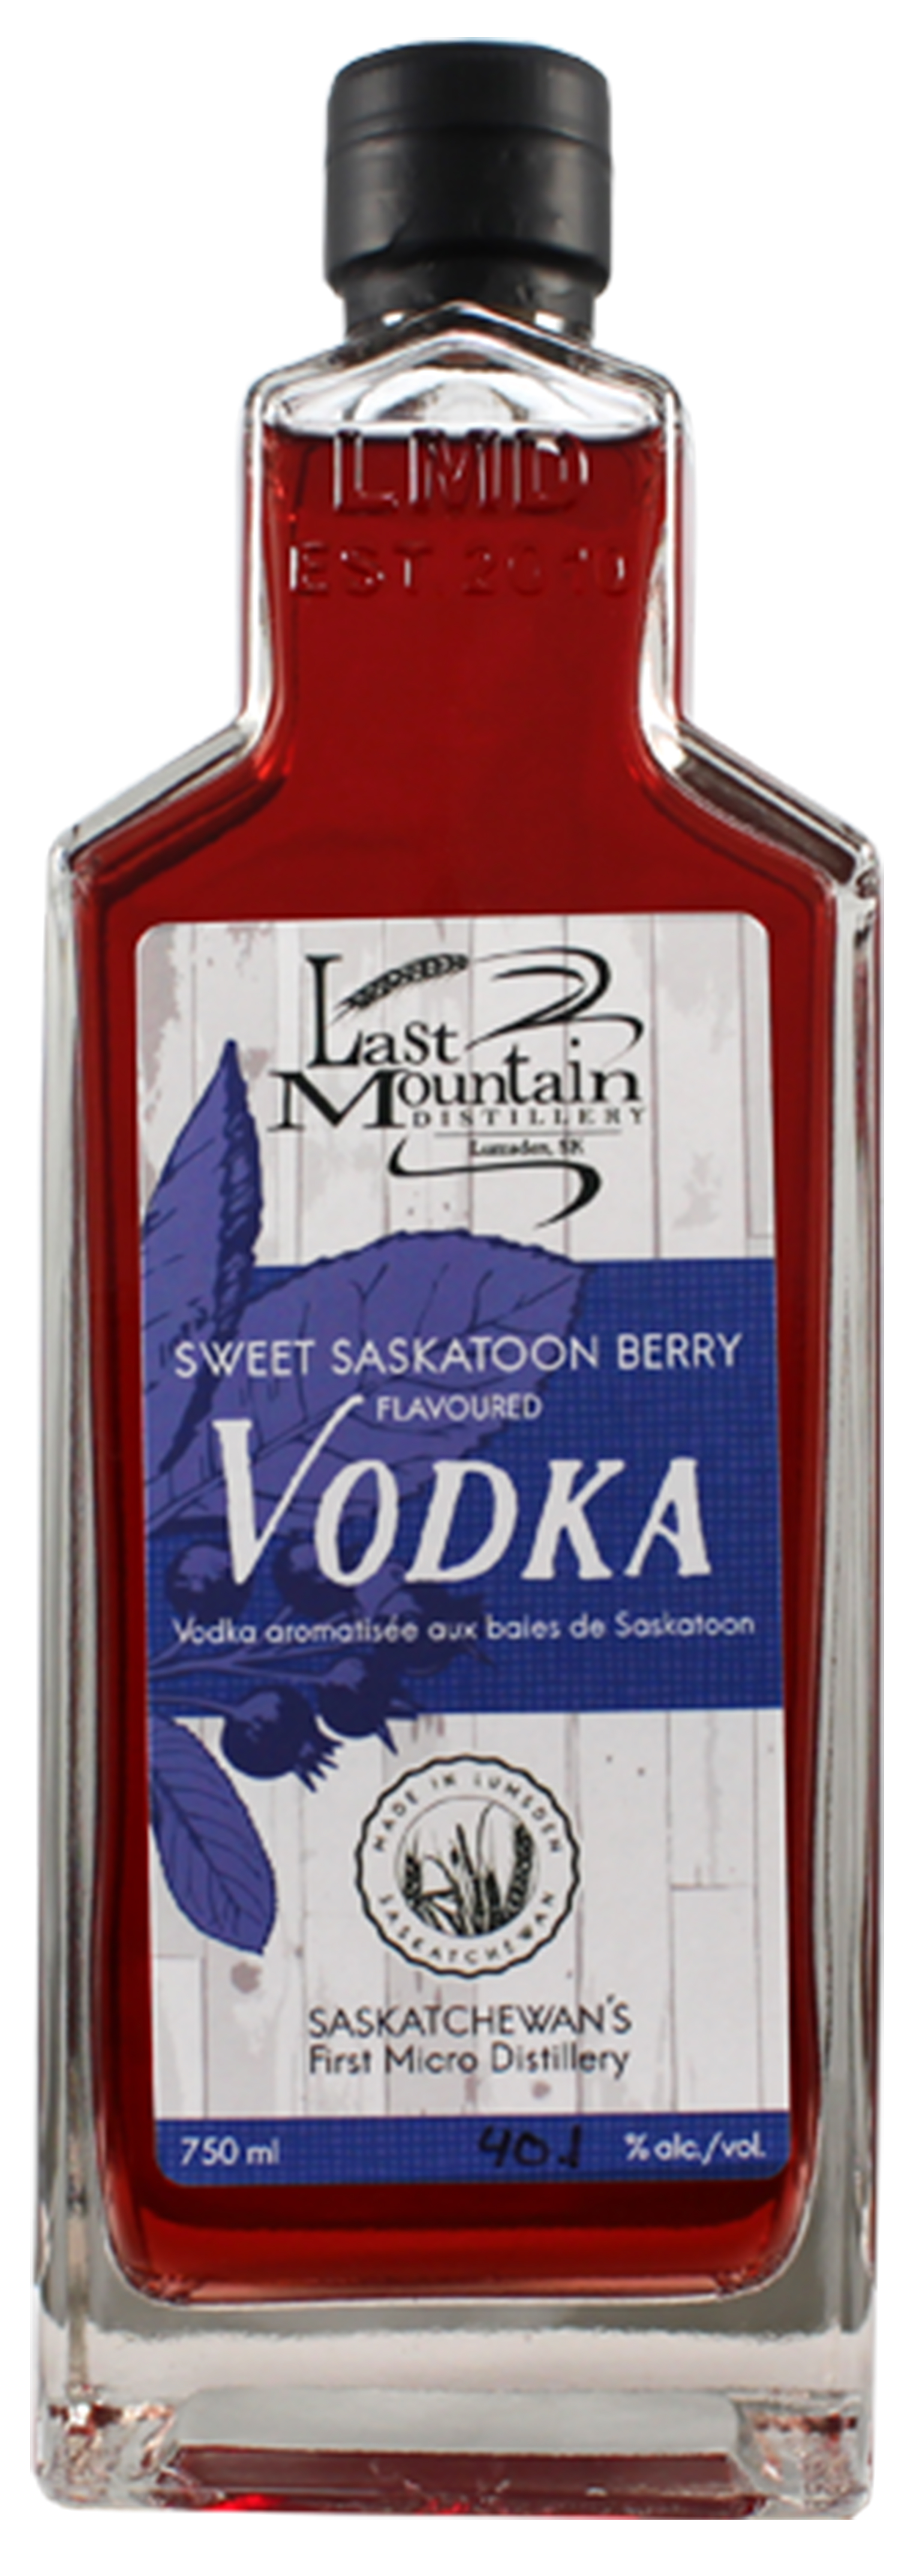 Sweet Saskatoon Berry Vodka 750ml